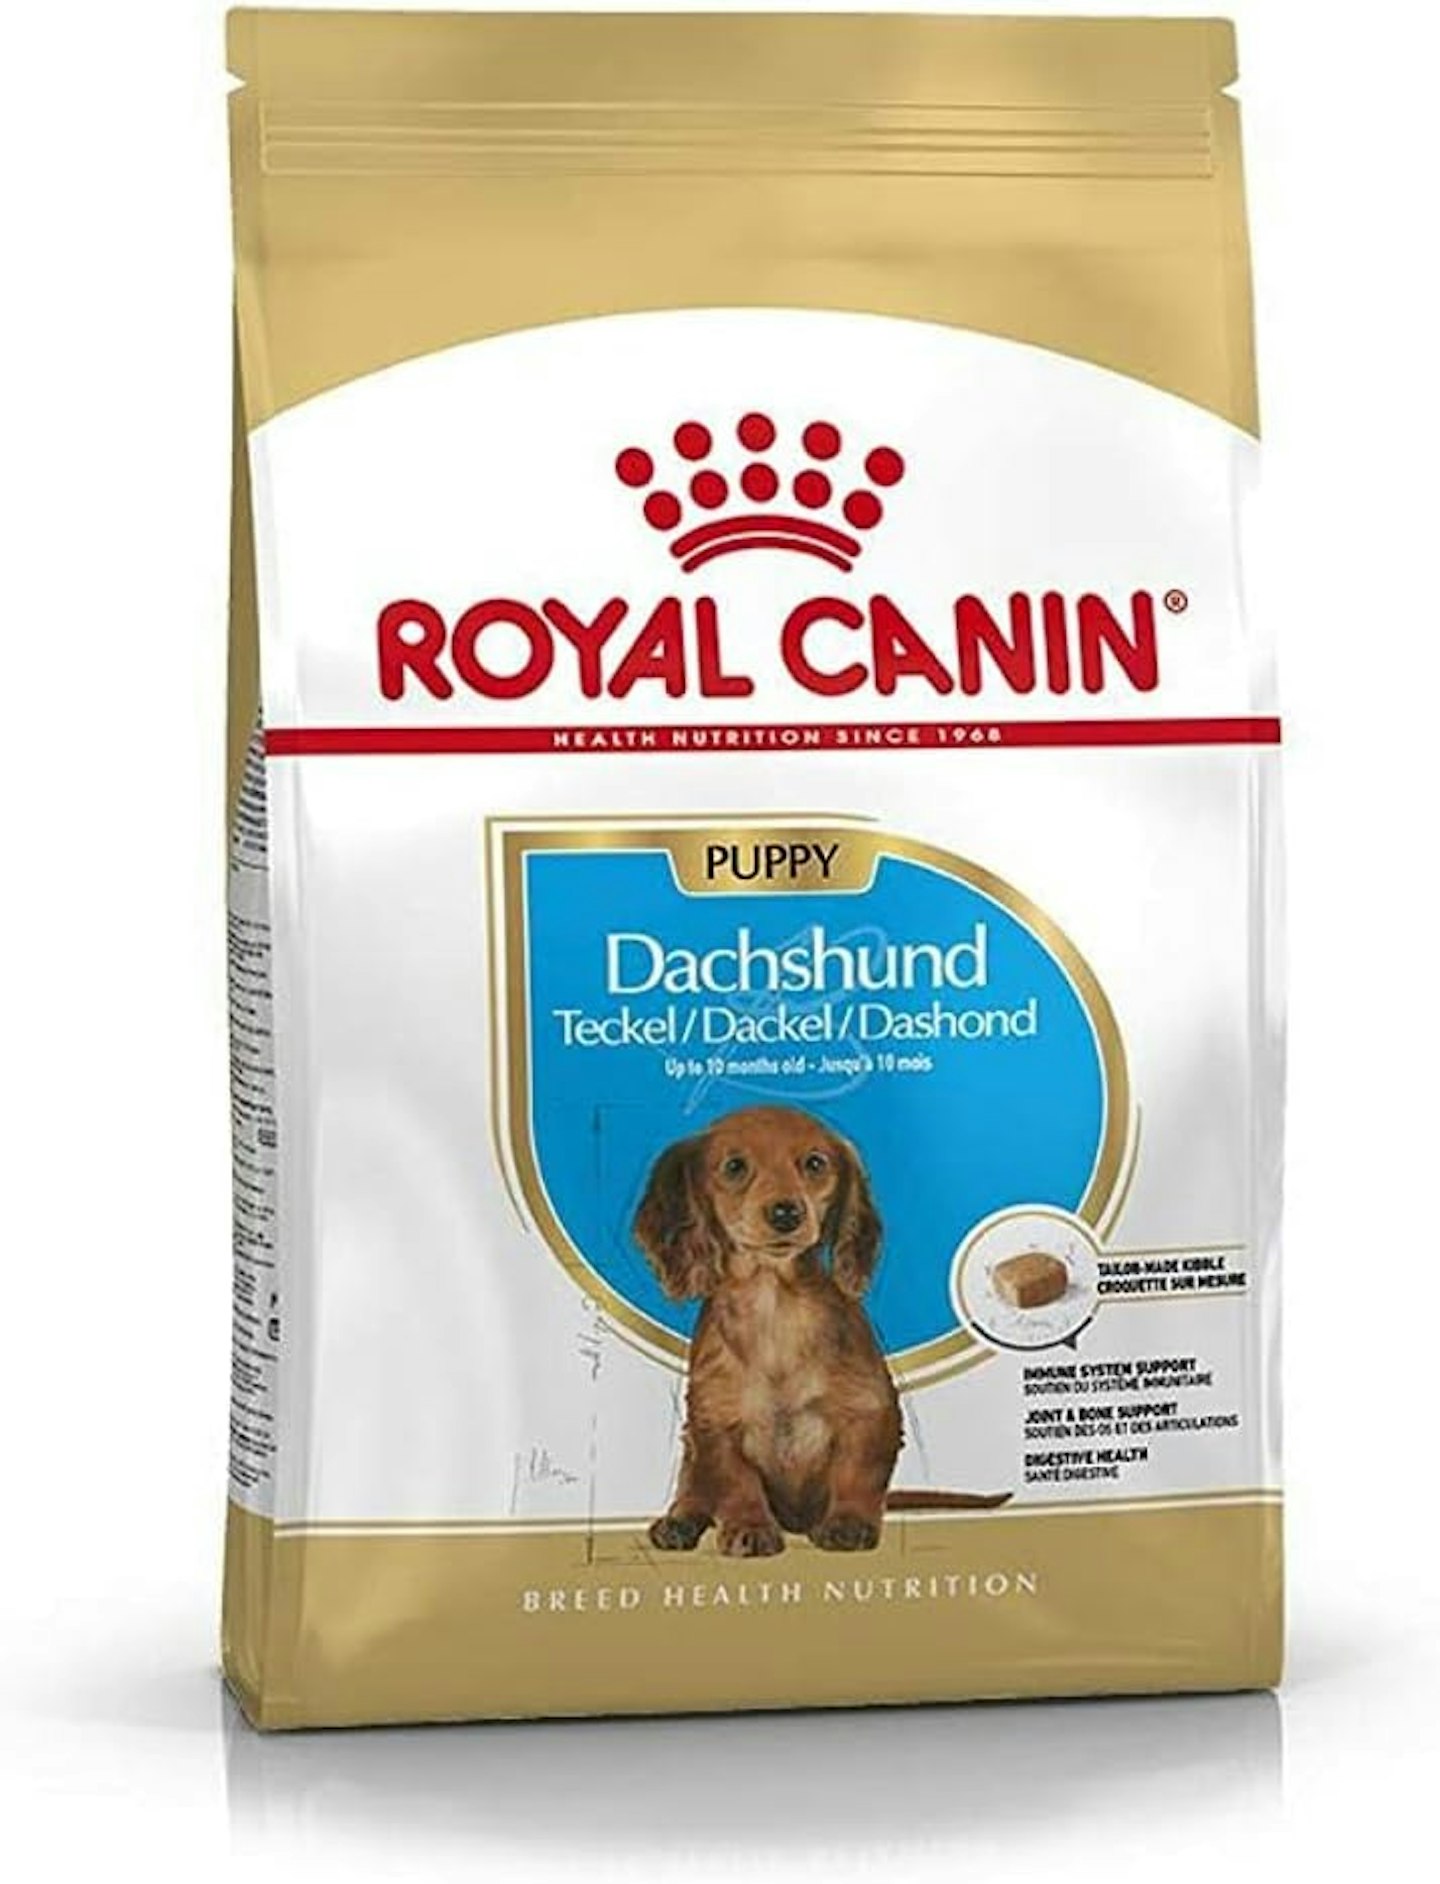 Royal Canin Dog Food Dachshund Puppy Dry Dog Food Mix